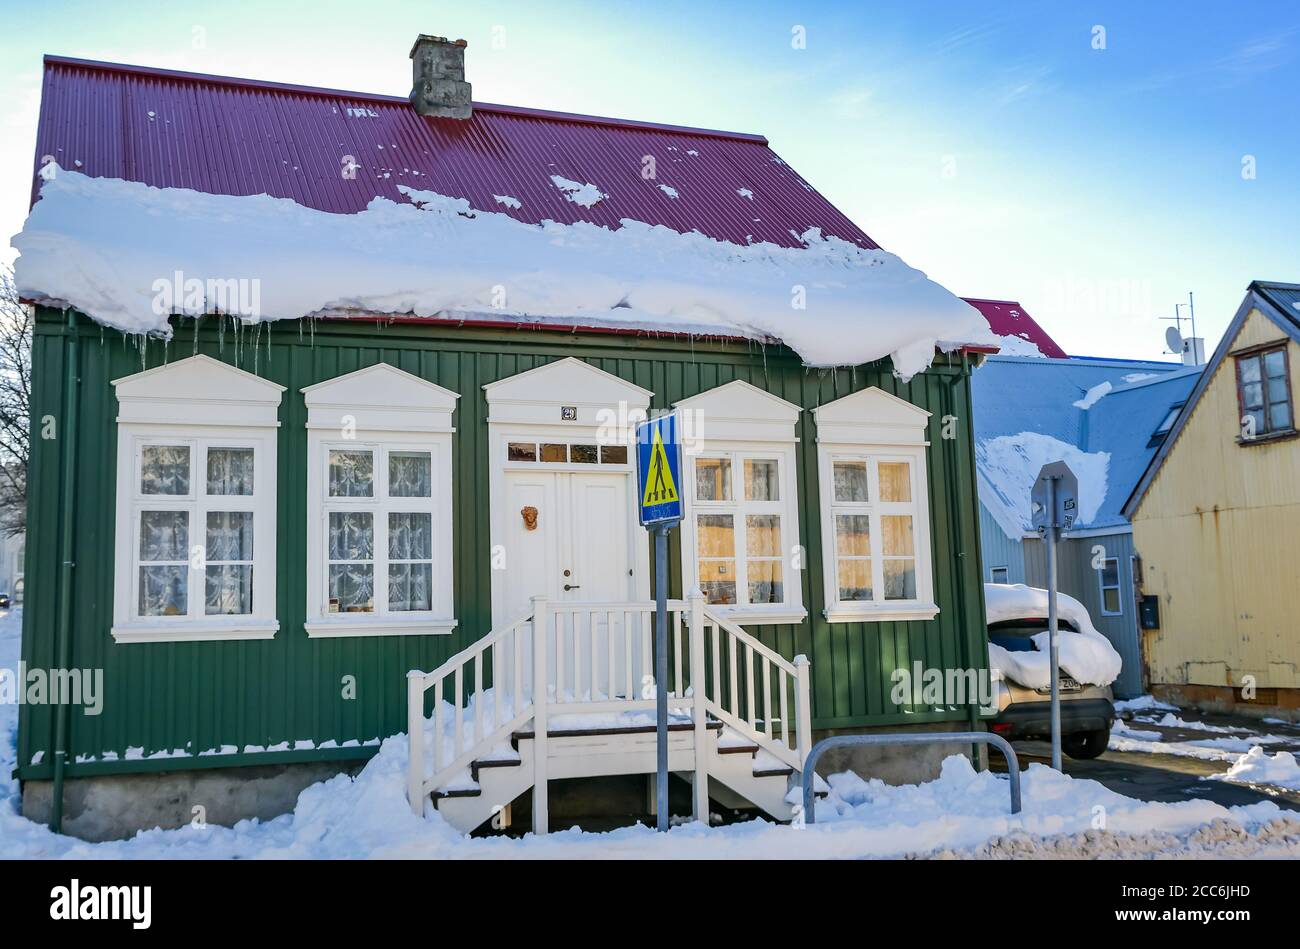 Maison traditionnelle construite avec du métal ondulé recouvert de neige, en hiver, Rekjavik, Islande Banque D'Images